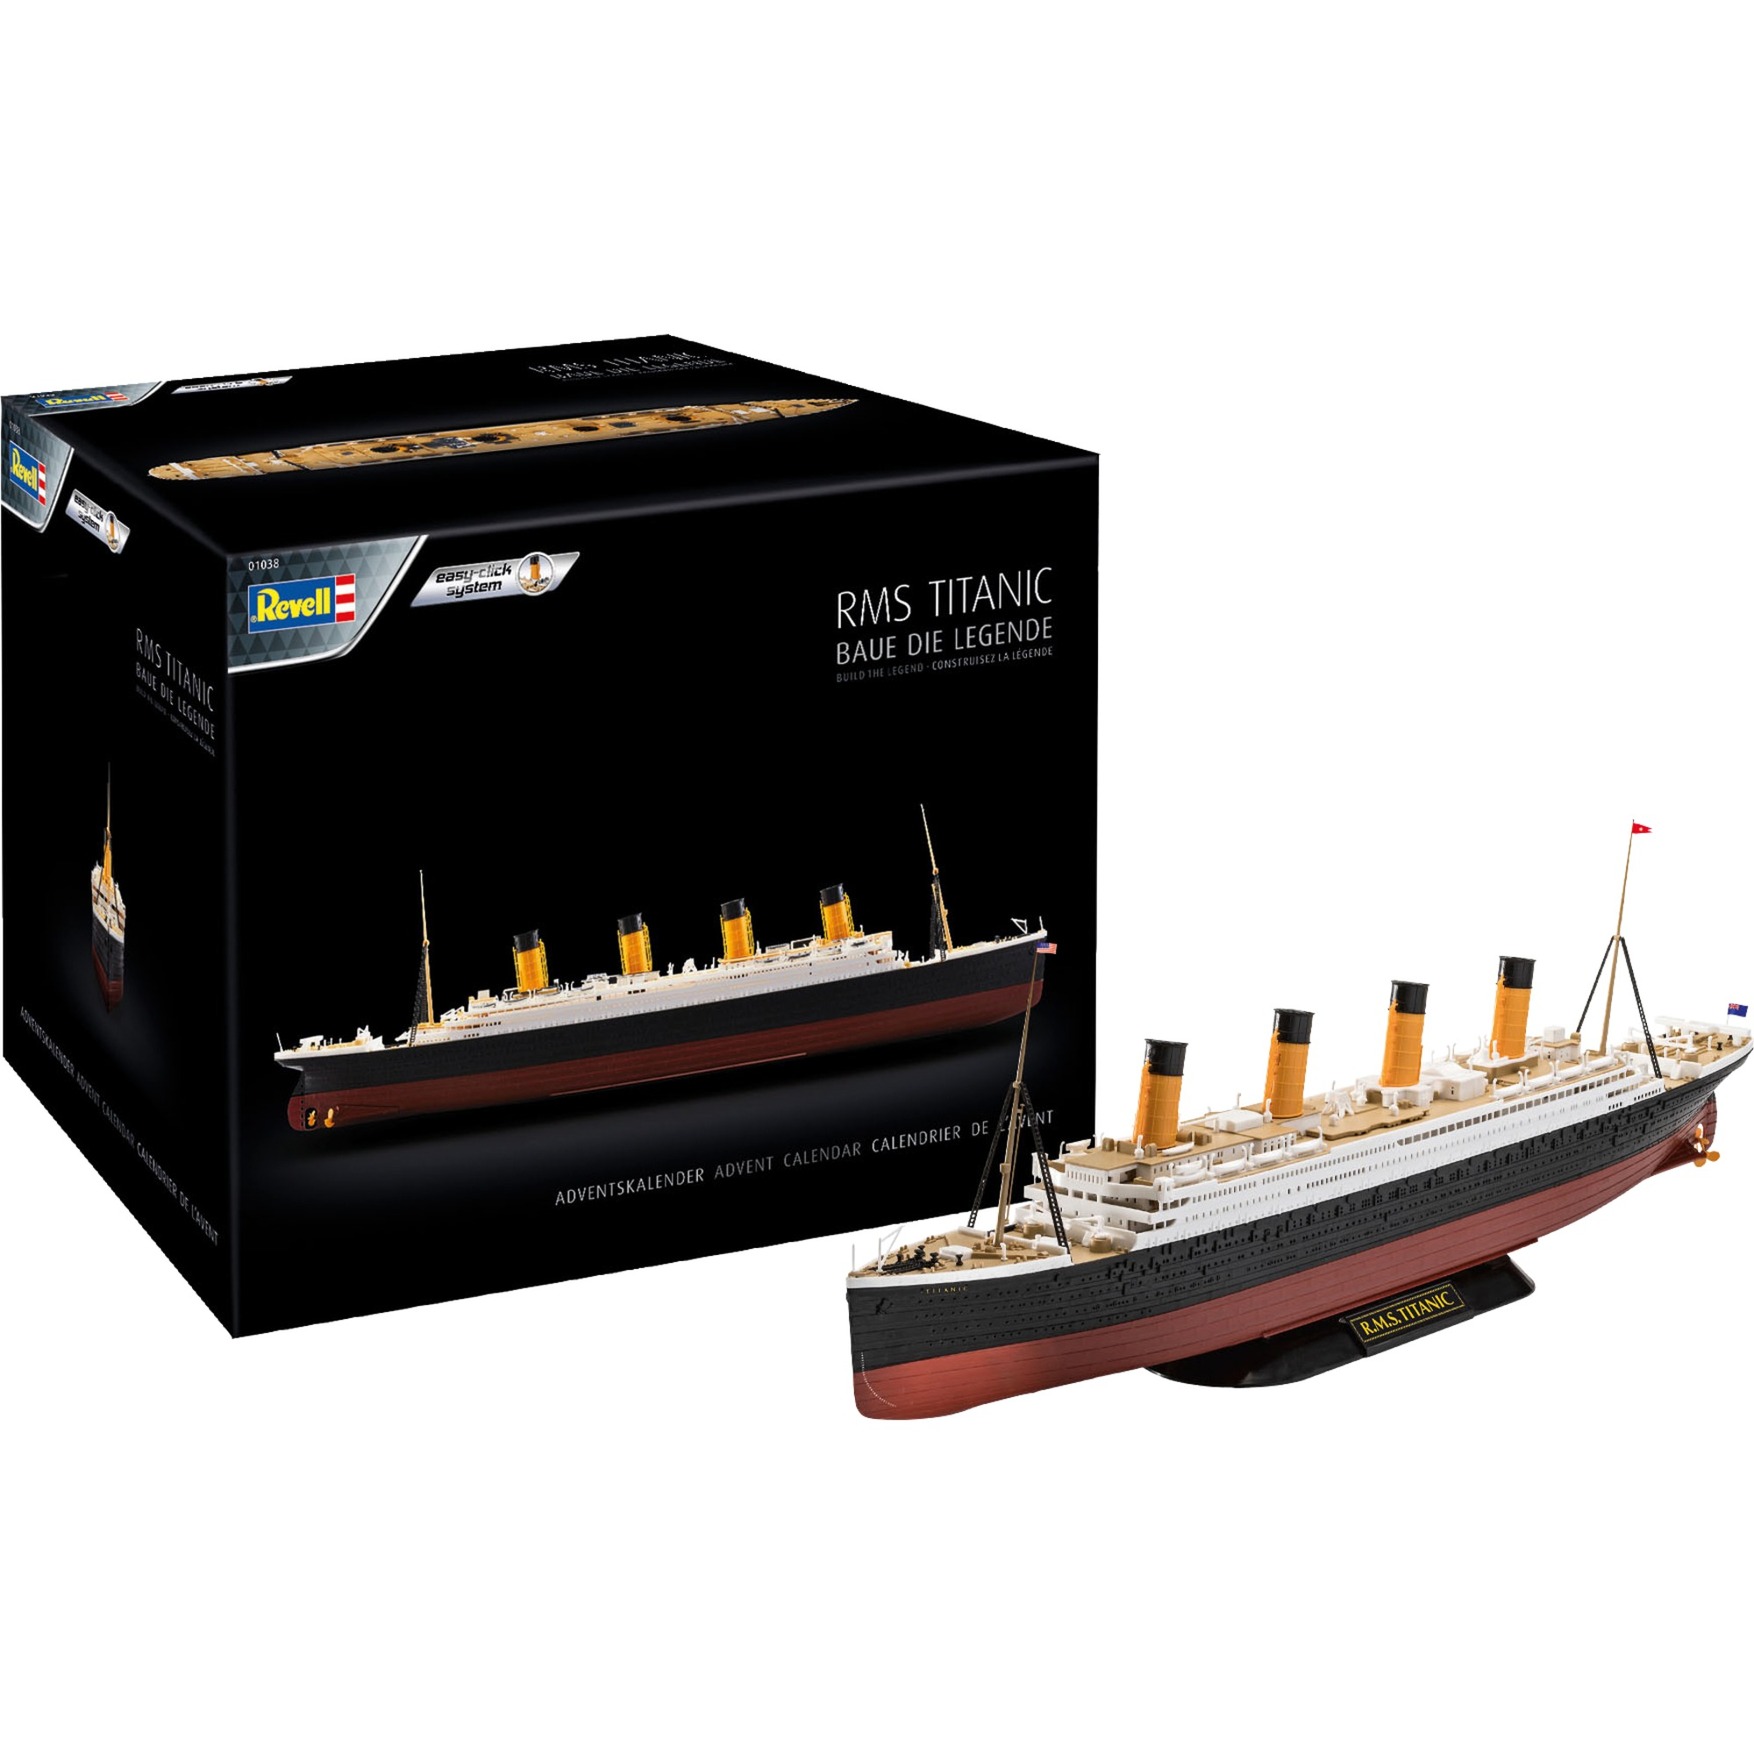 Image of Alternate - Adventskalender RMS Titanic, Modellbau online einkaufen bei Alternate